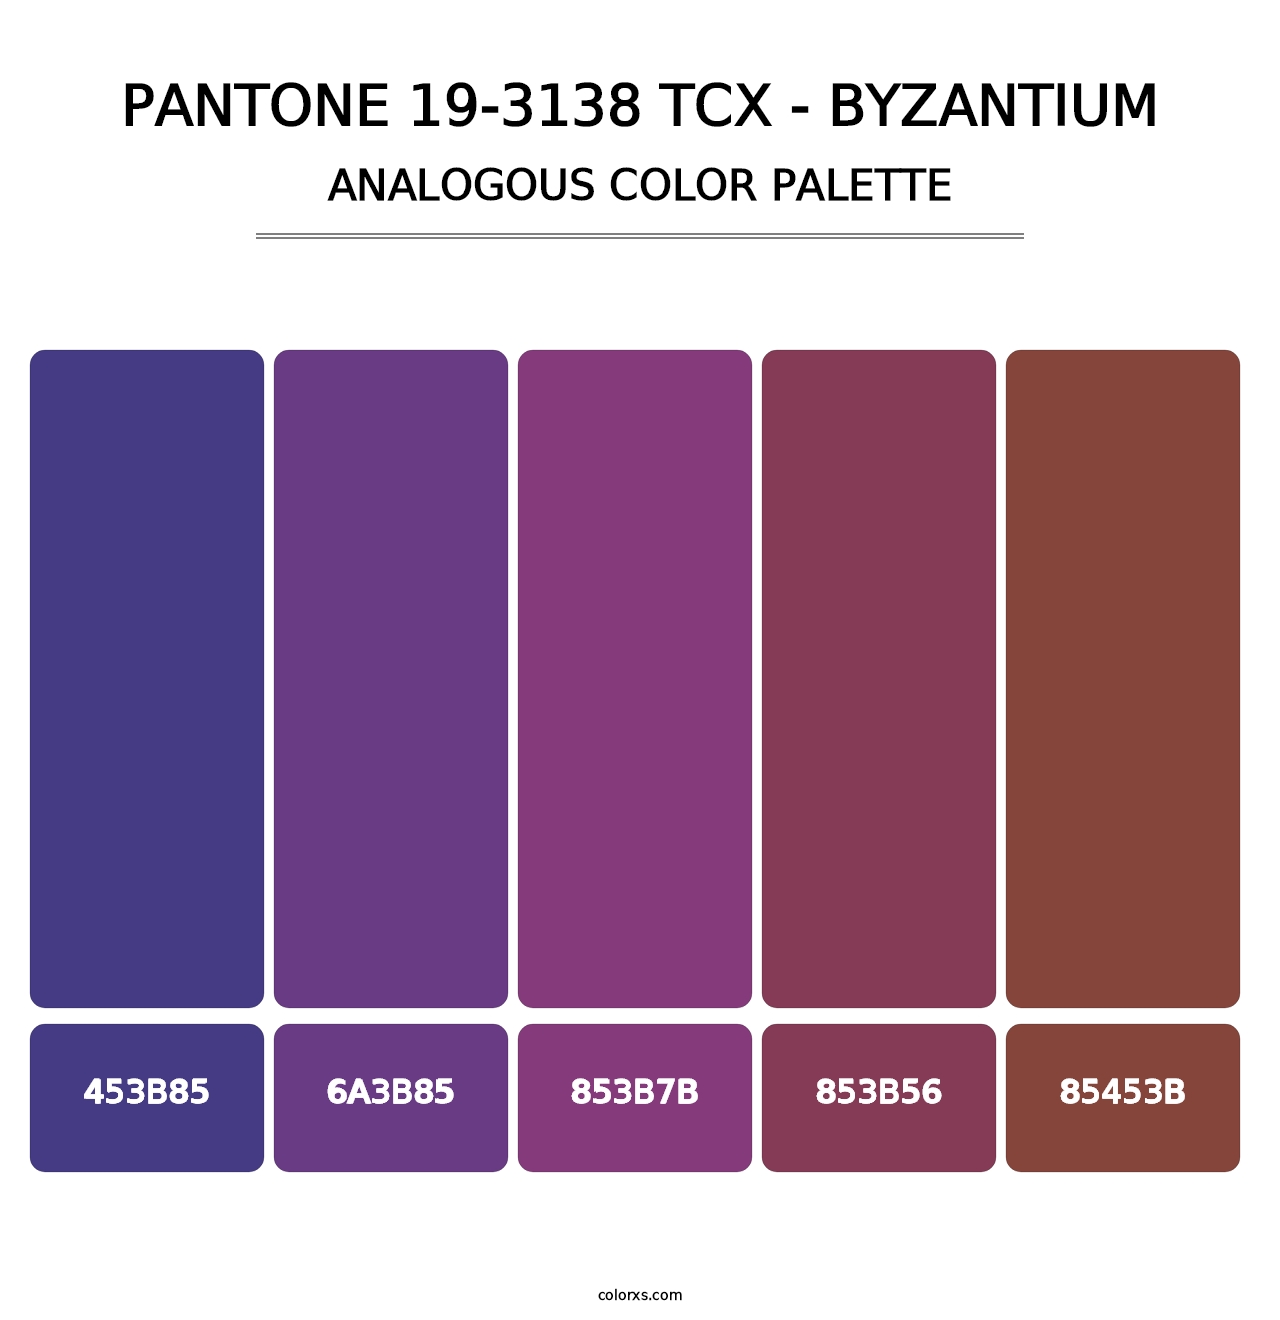 PANTONE 19-3138 TCX - Byzantium - Analogous Color Palette